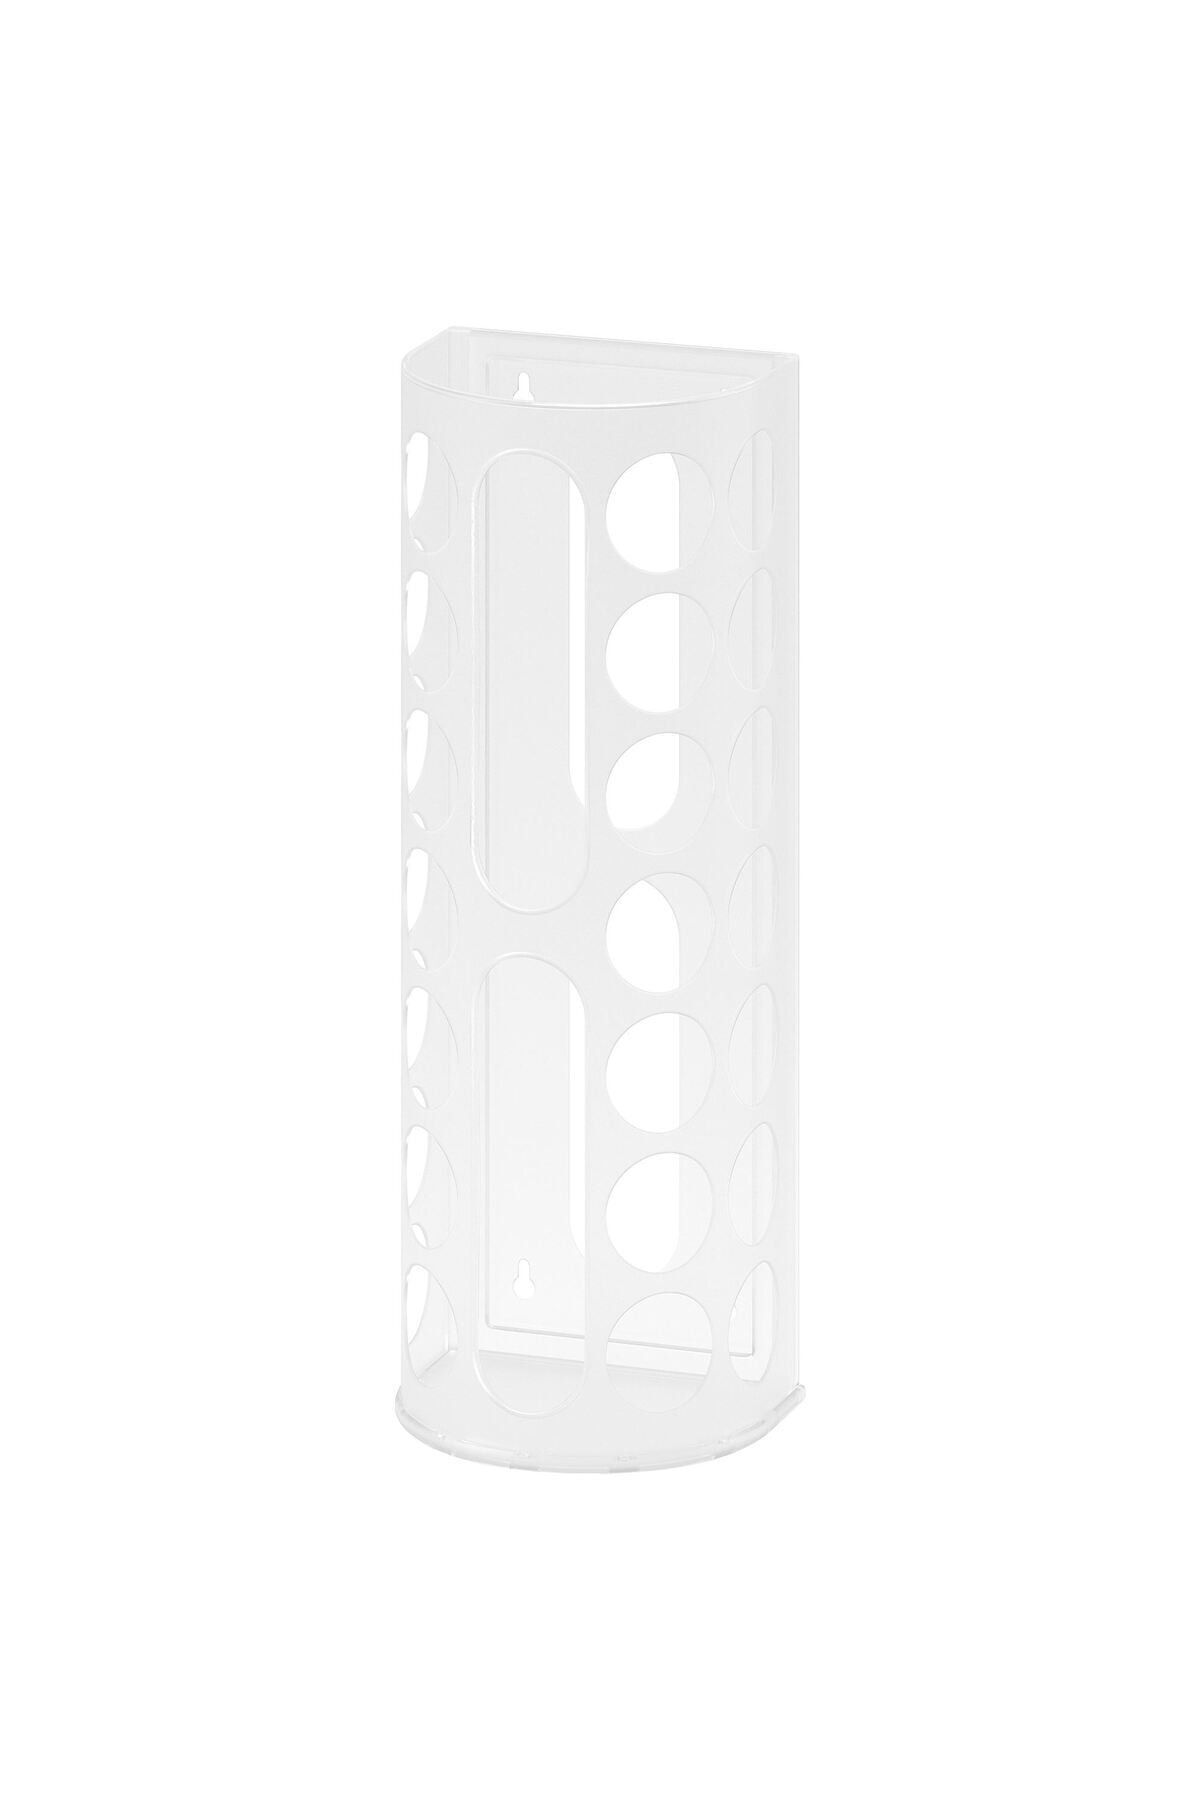 IKEA Naylon Poşetlik Torba Toplayıcı Yükseklik: 45 cm İkea Plastik Poşet Kutusu Beyaz Kutu